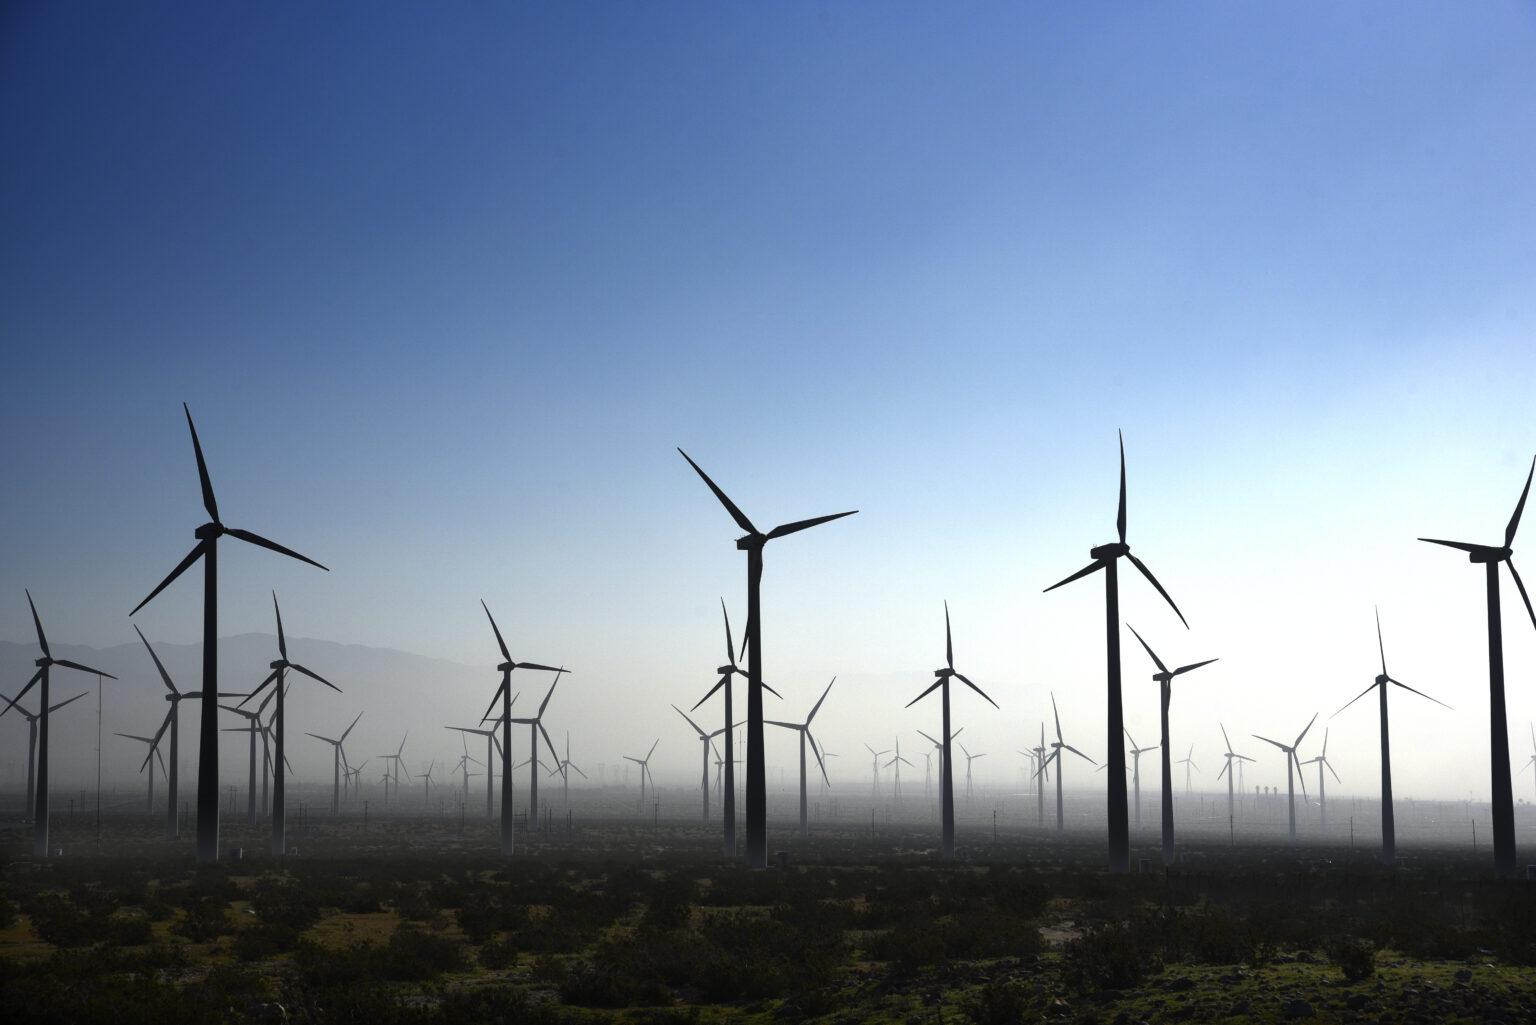 Rottneros подписала долгосрочное соглашение о поставках «зеленой» электроэнергии